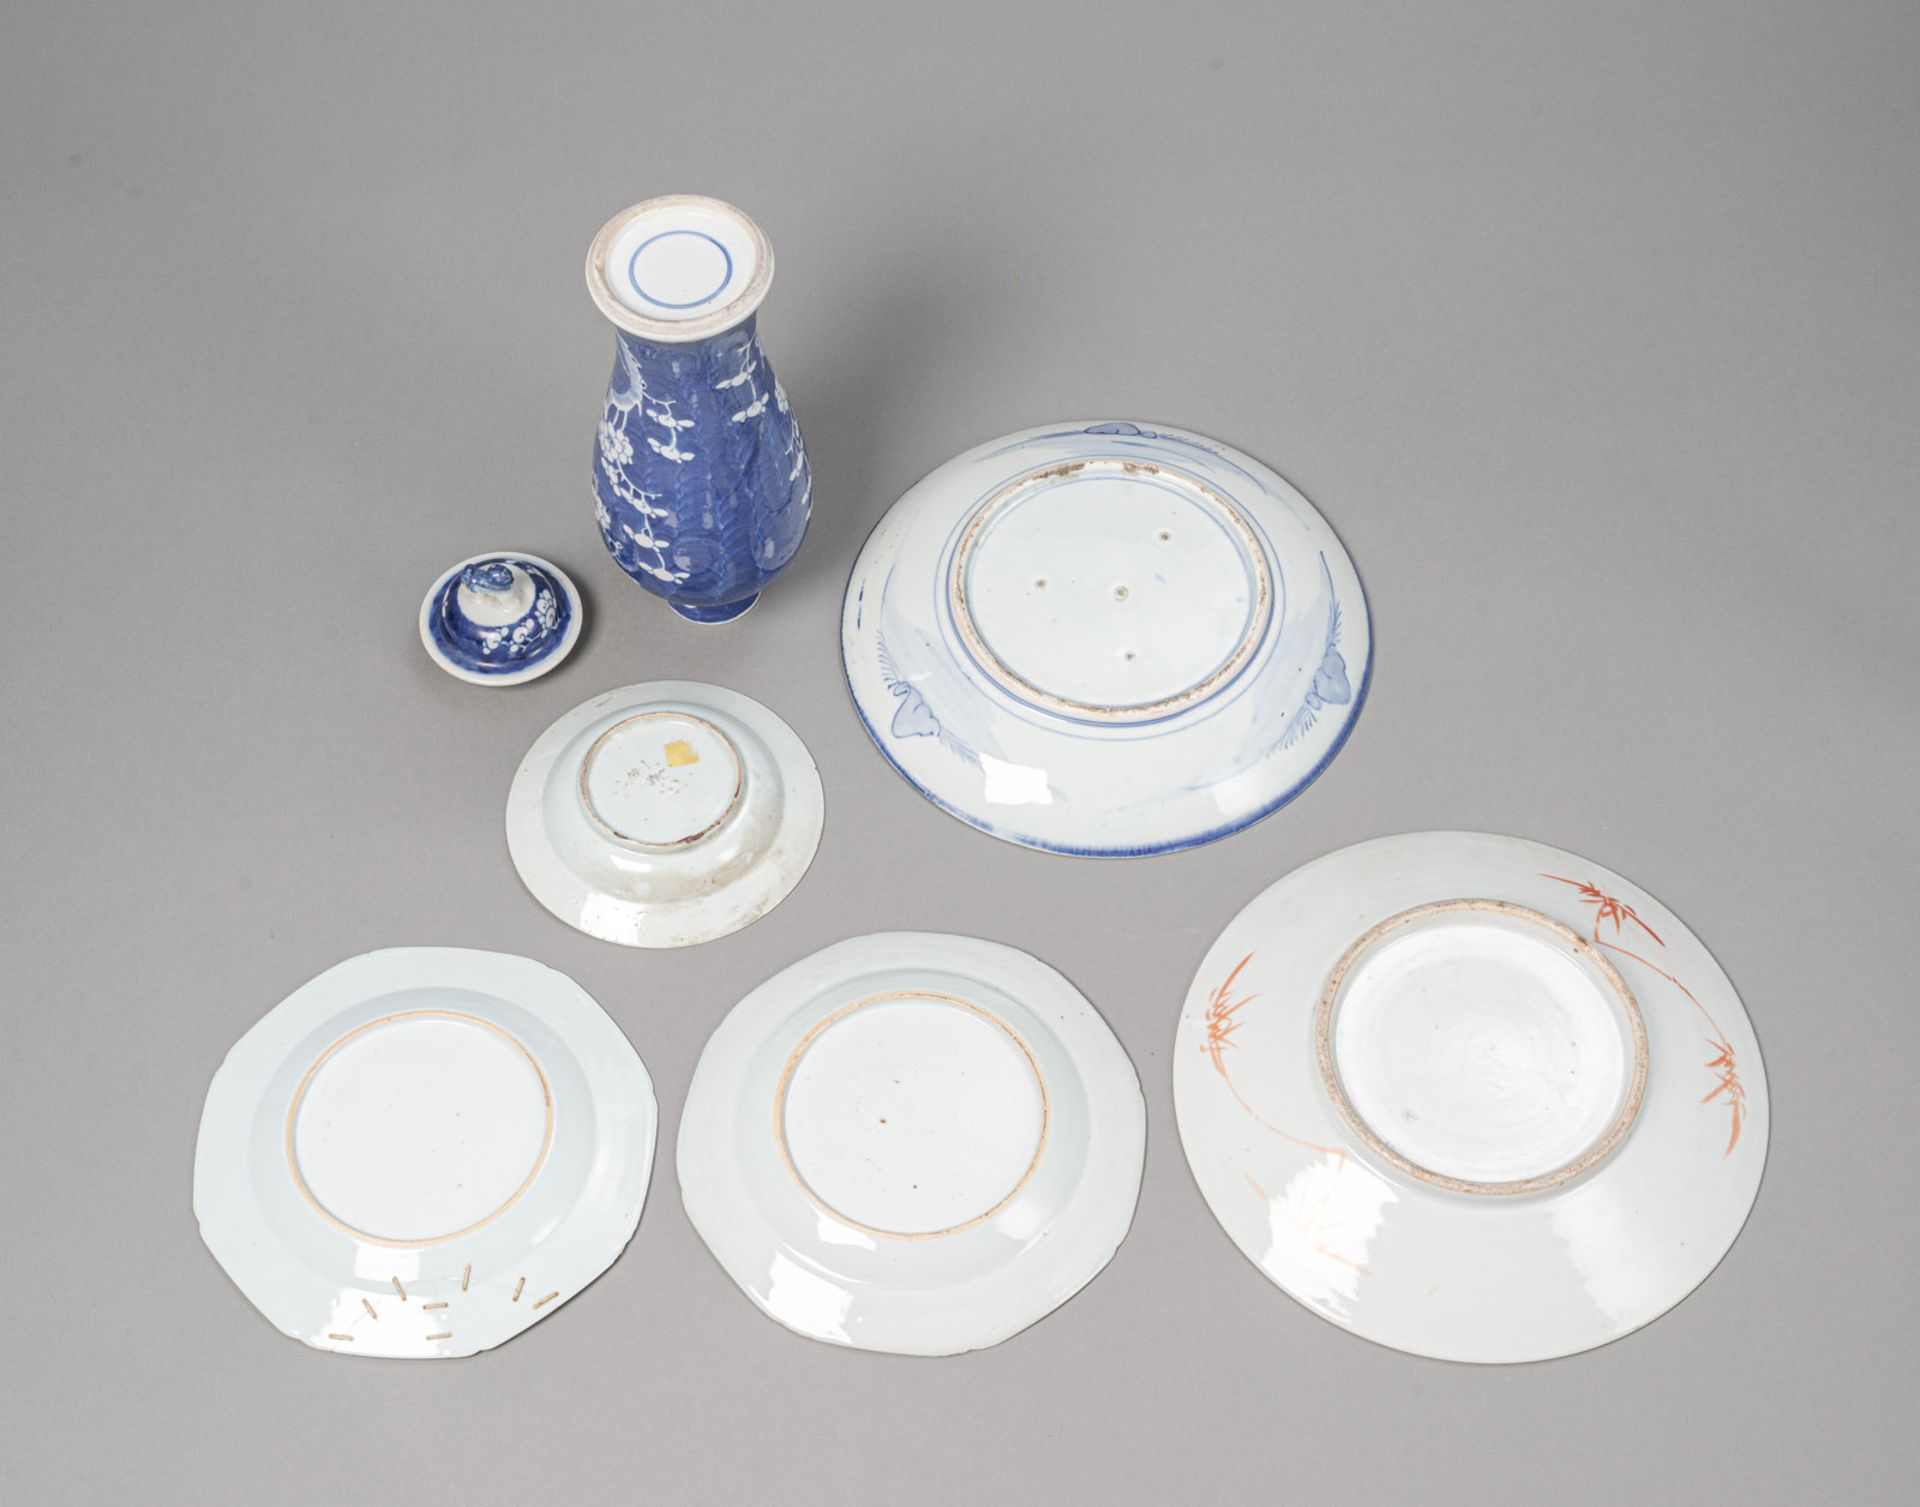 Krakelierte Vase mit Drachen-Reliefdekor, blau-weiße Deckelvase aus Porzellan und fünf Teller - Bild 2 aus 7